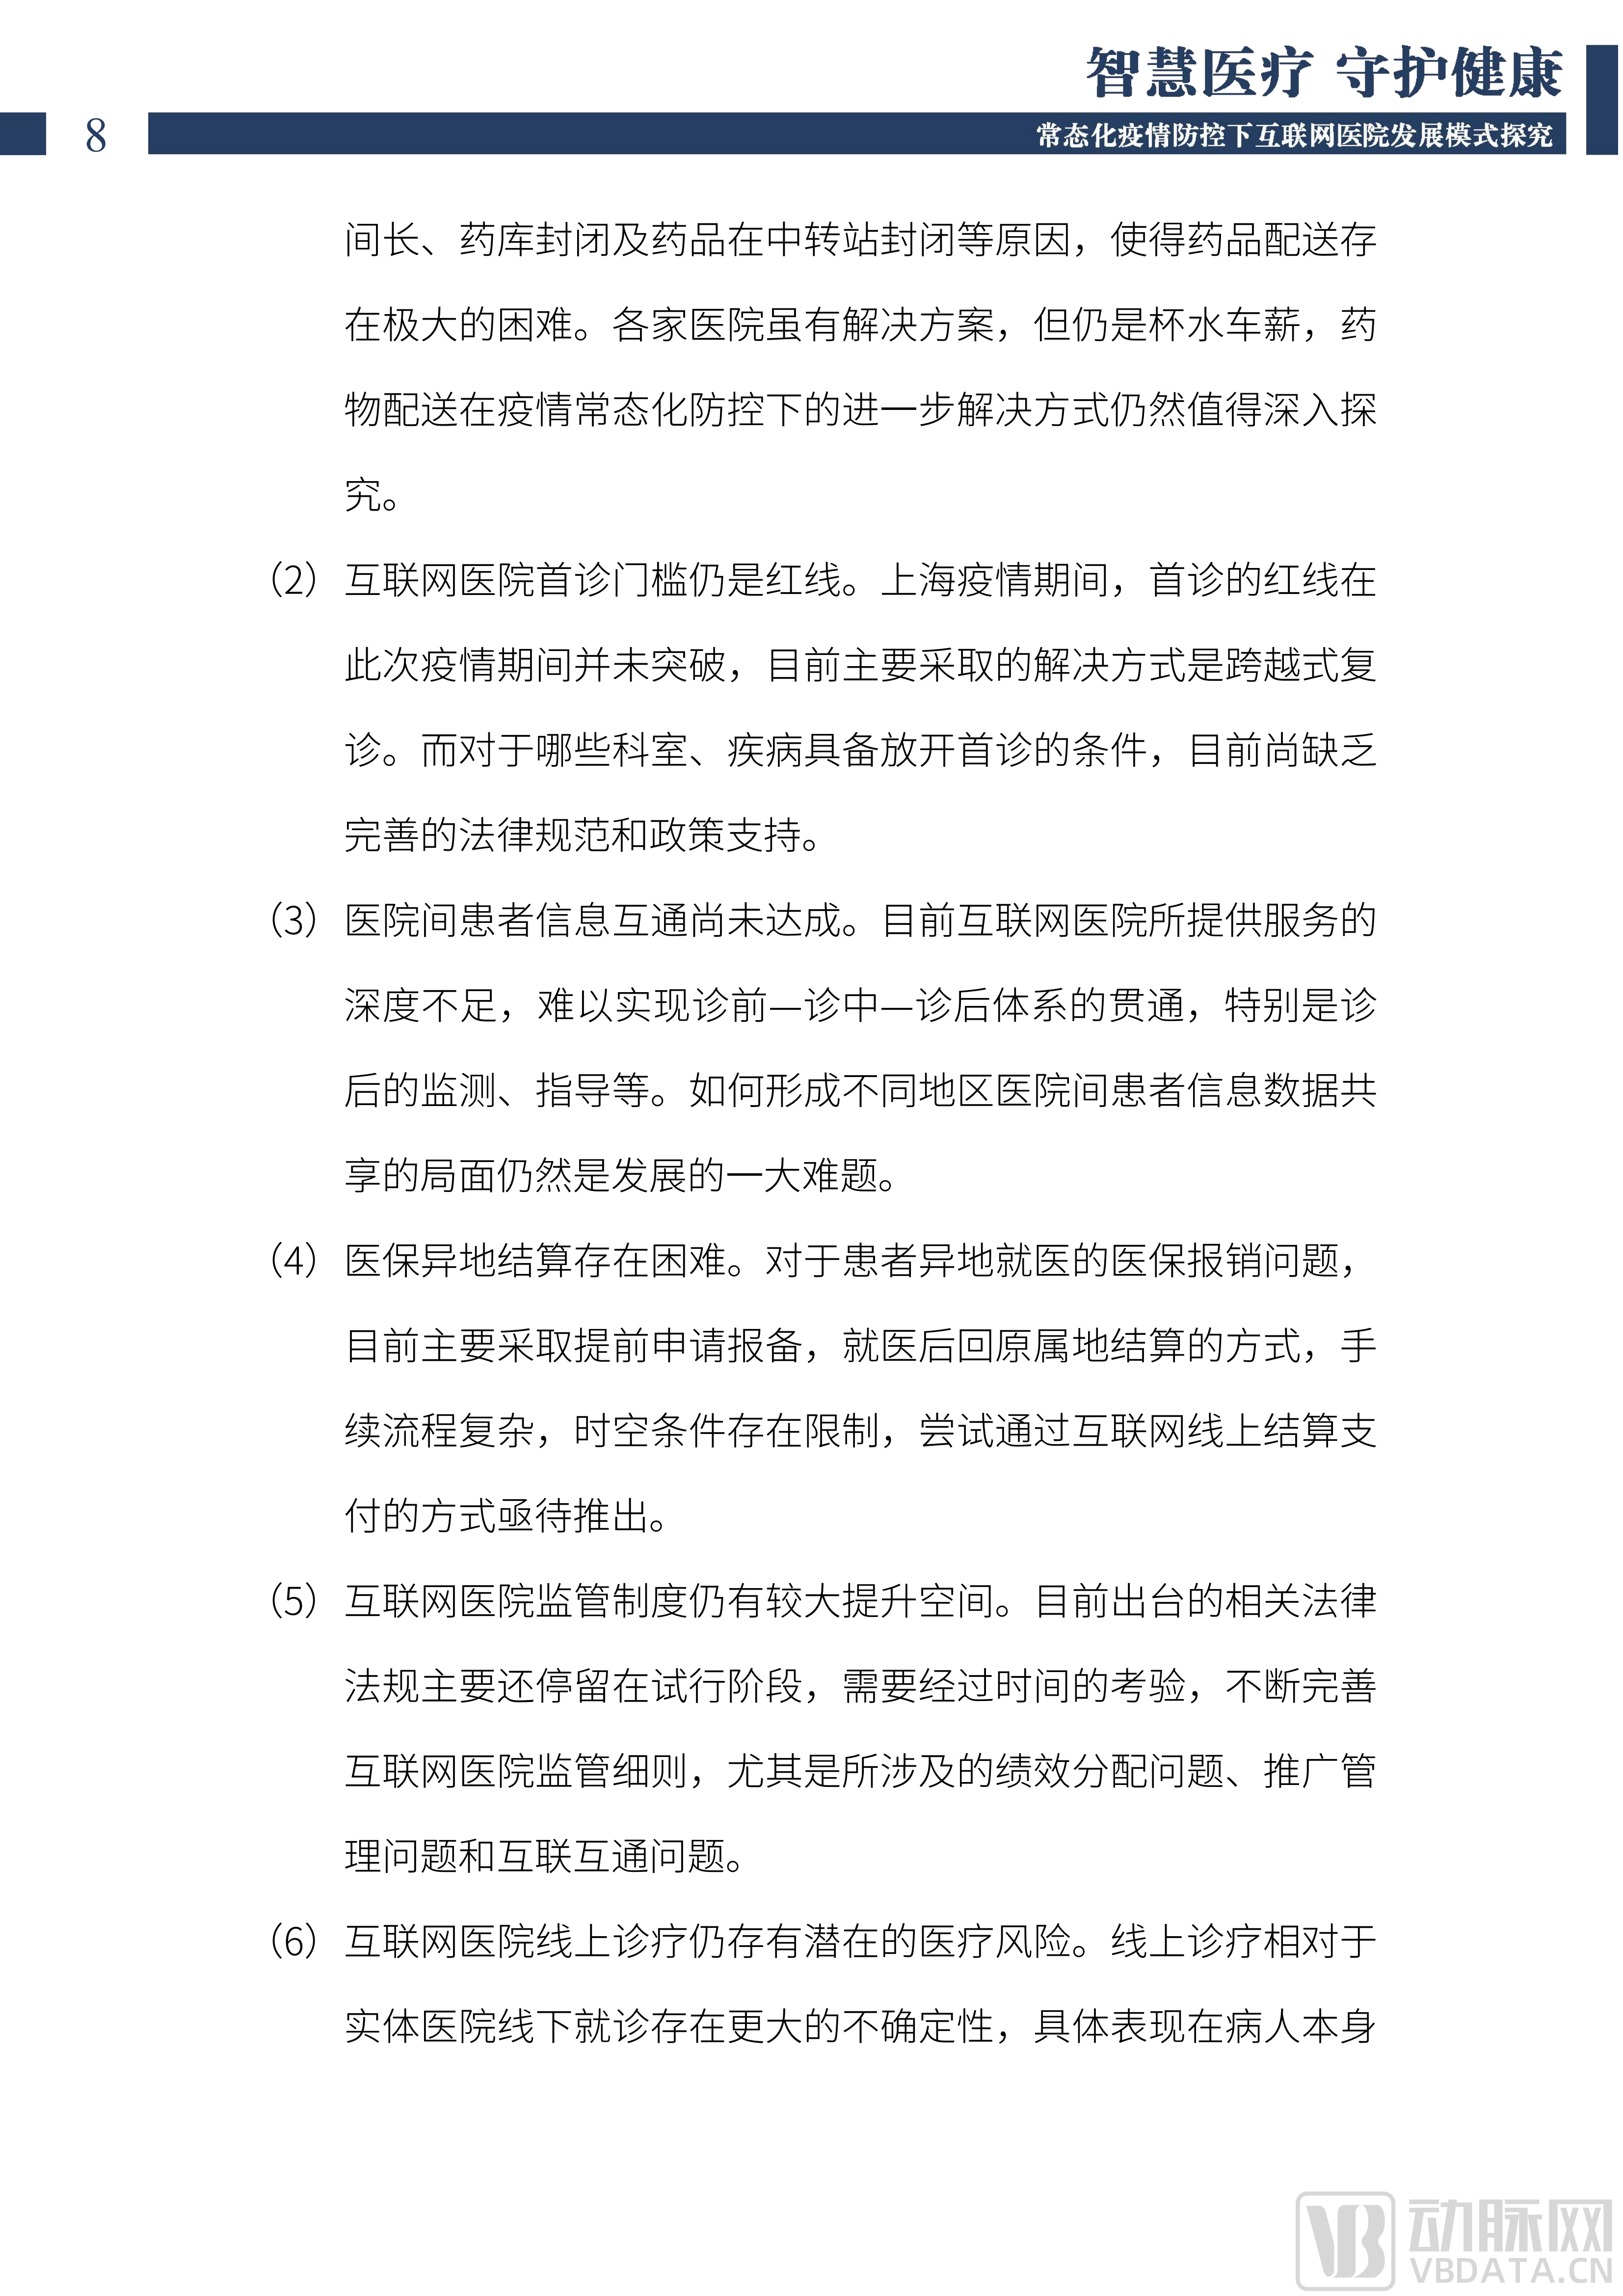 2022中国互联网医院发展调研报告(1)_09.png